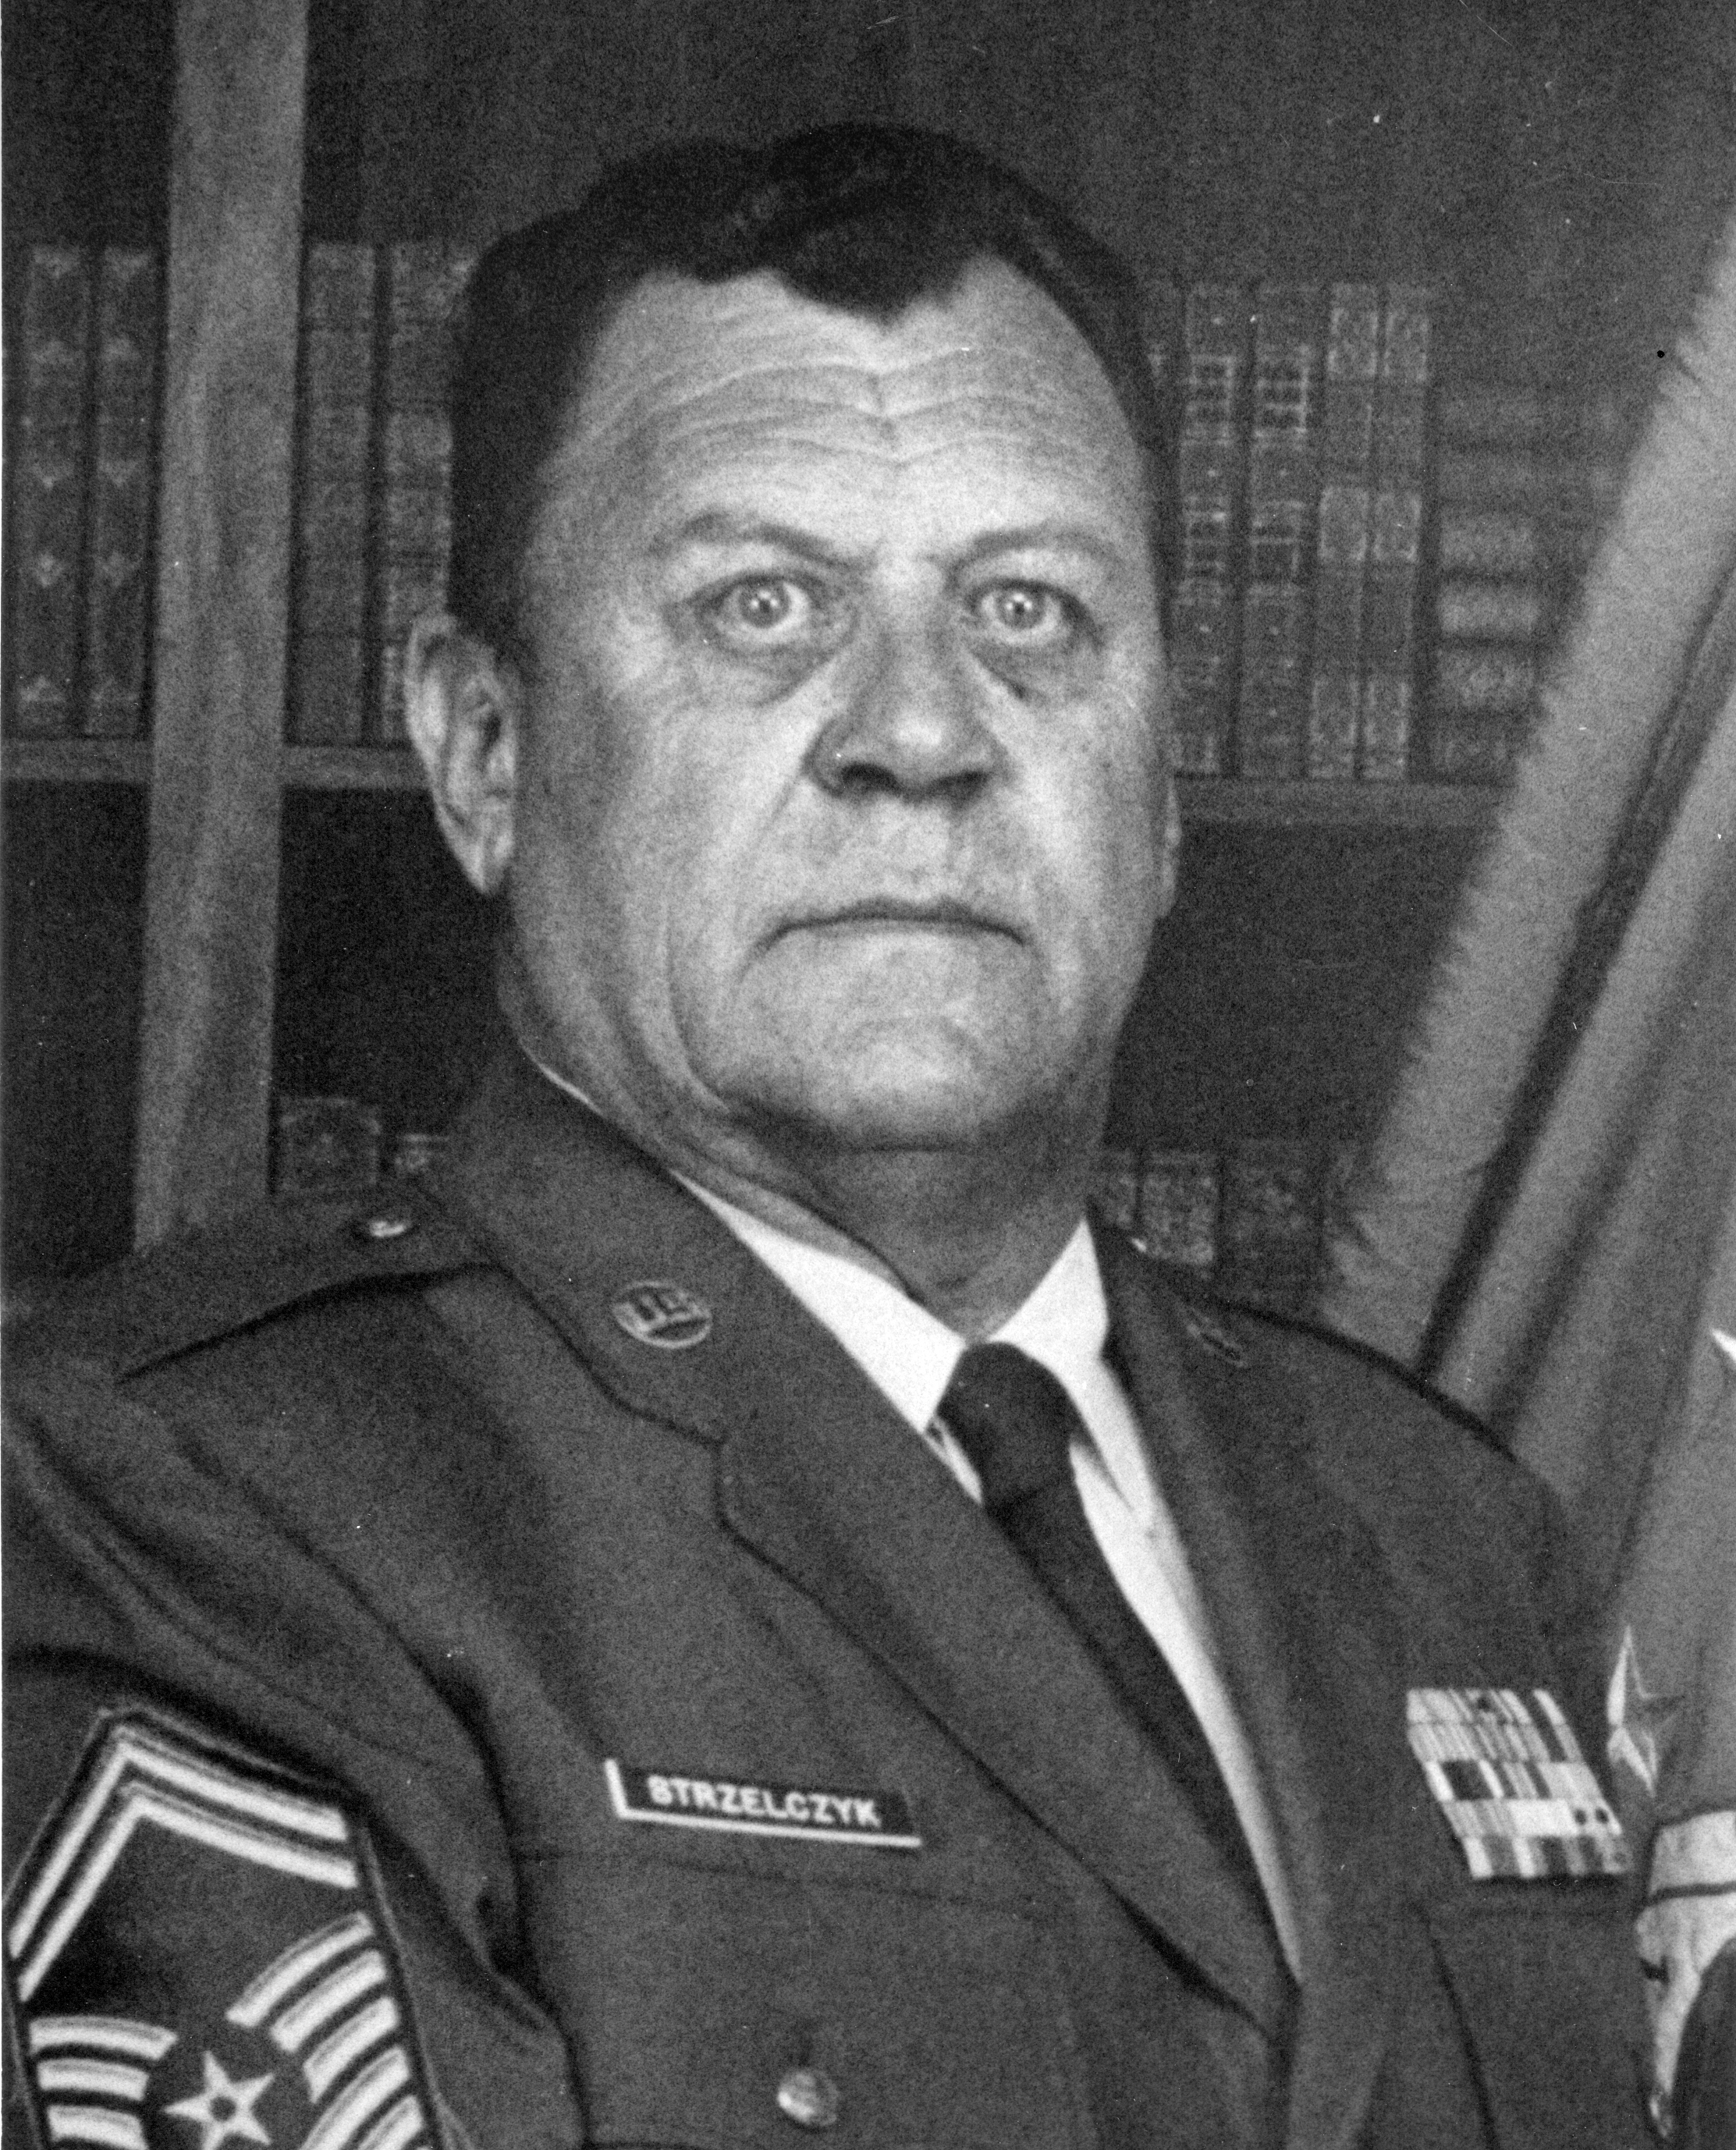 Chief Master Sergeant Frank S. Strzelczyk